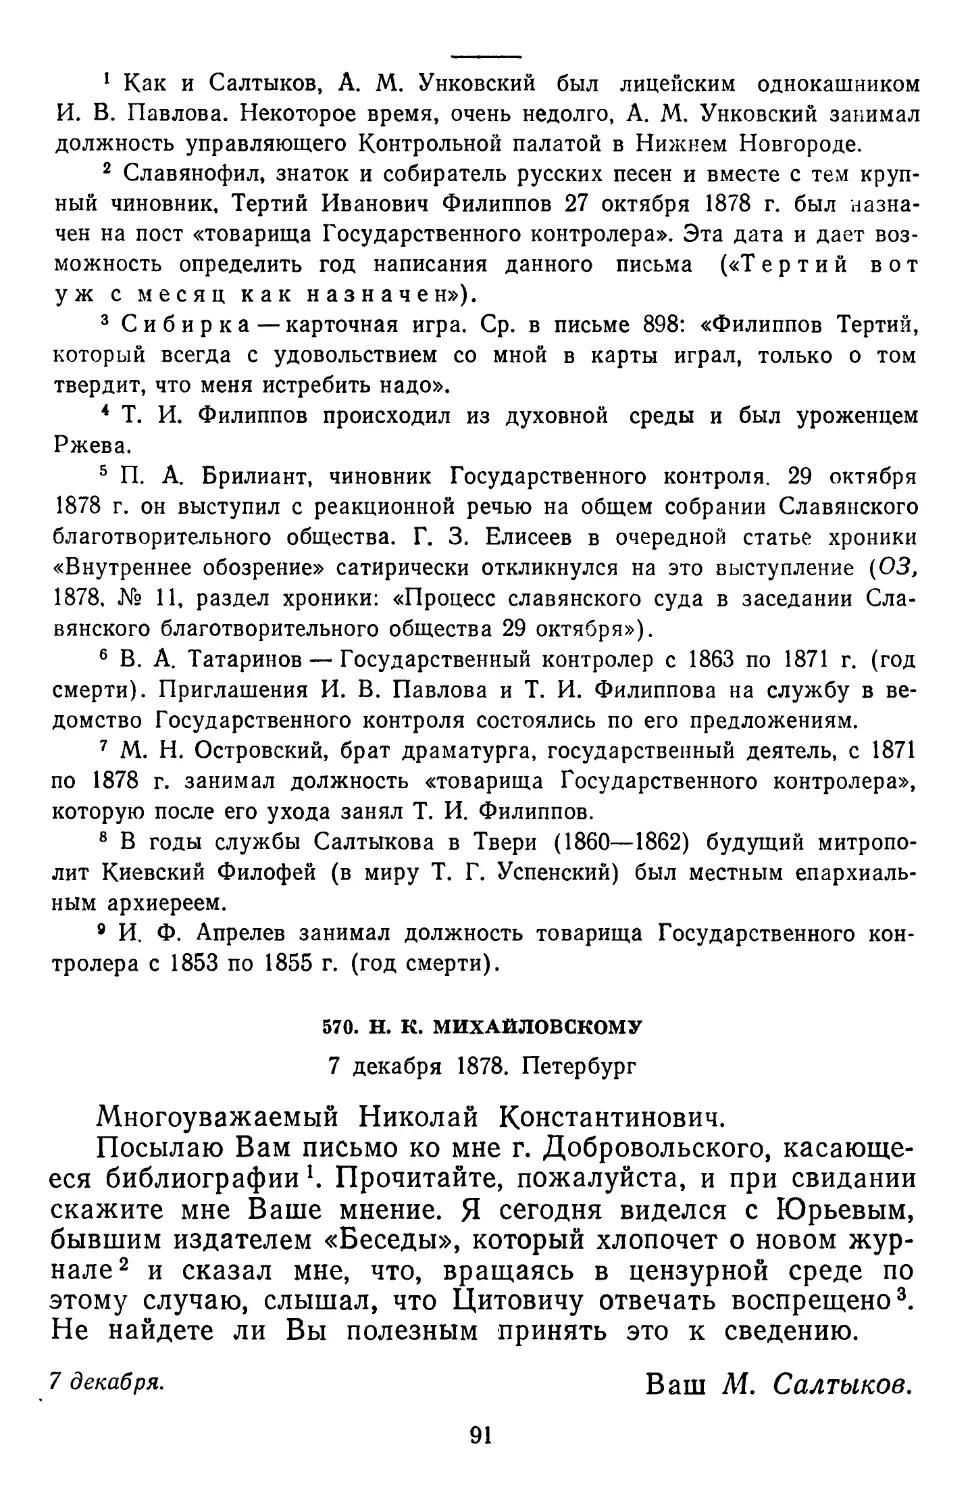 570.Н. К. Михайловскому. 7 декабря 1878. Петербург